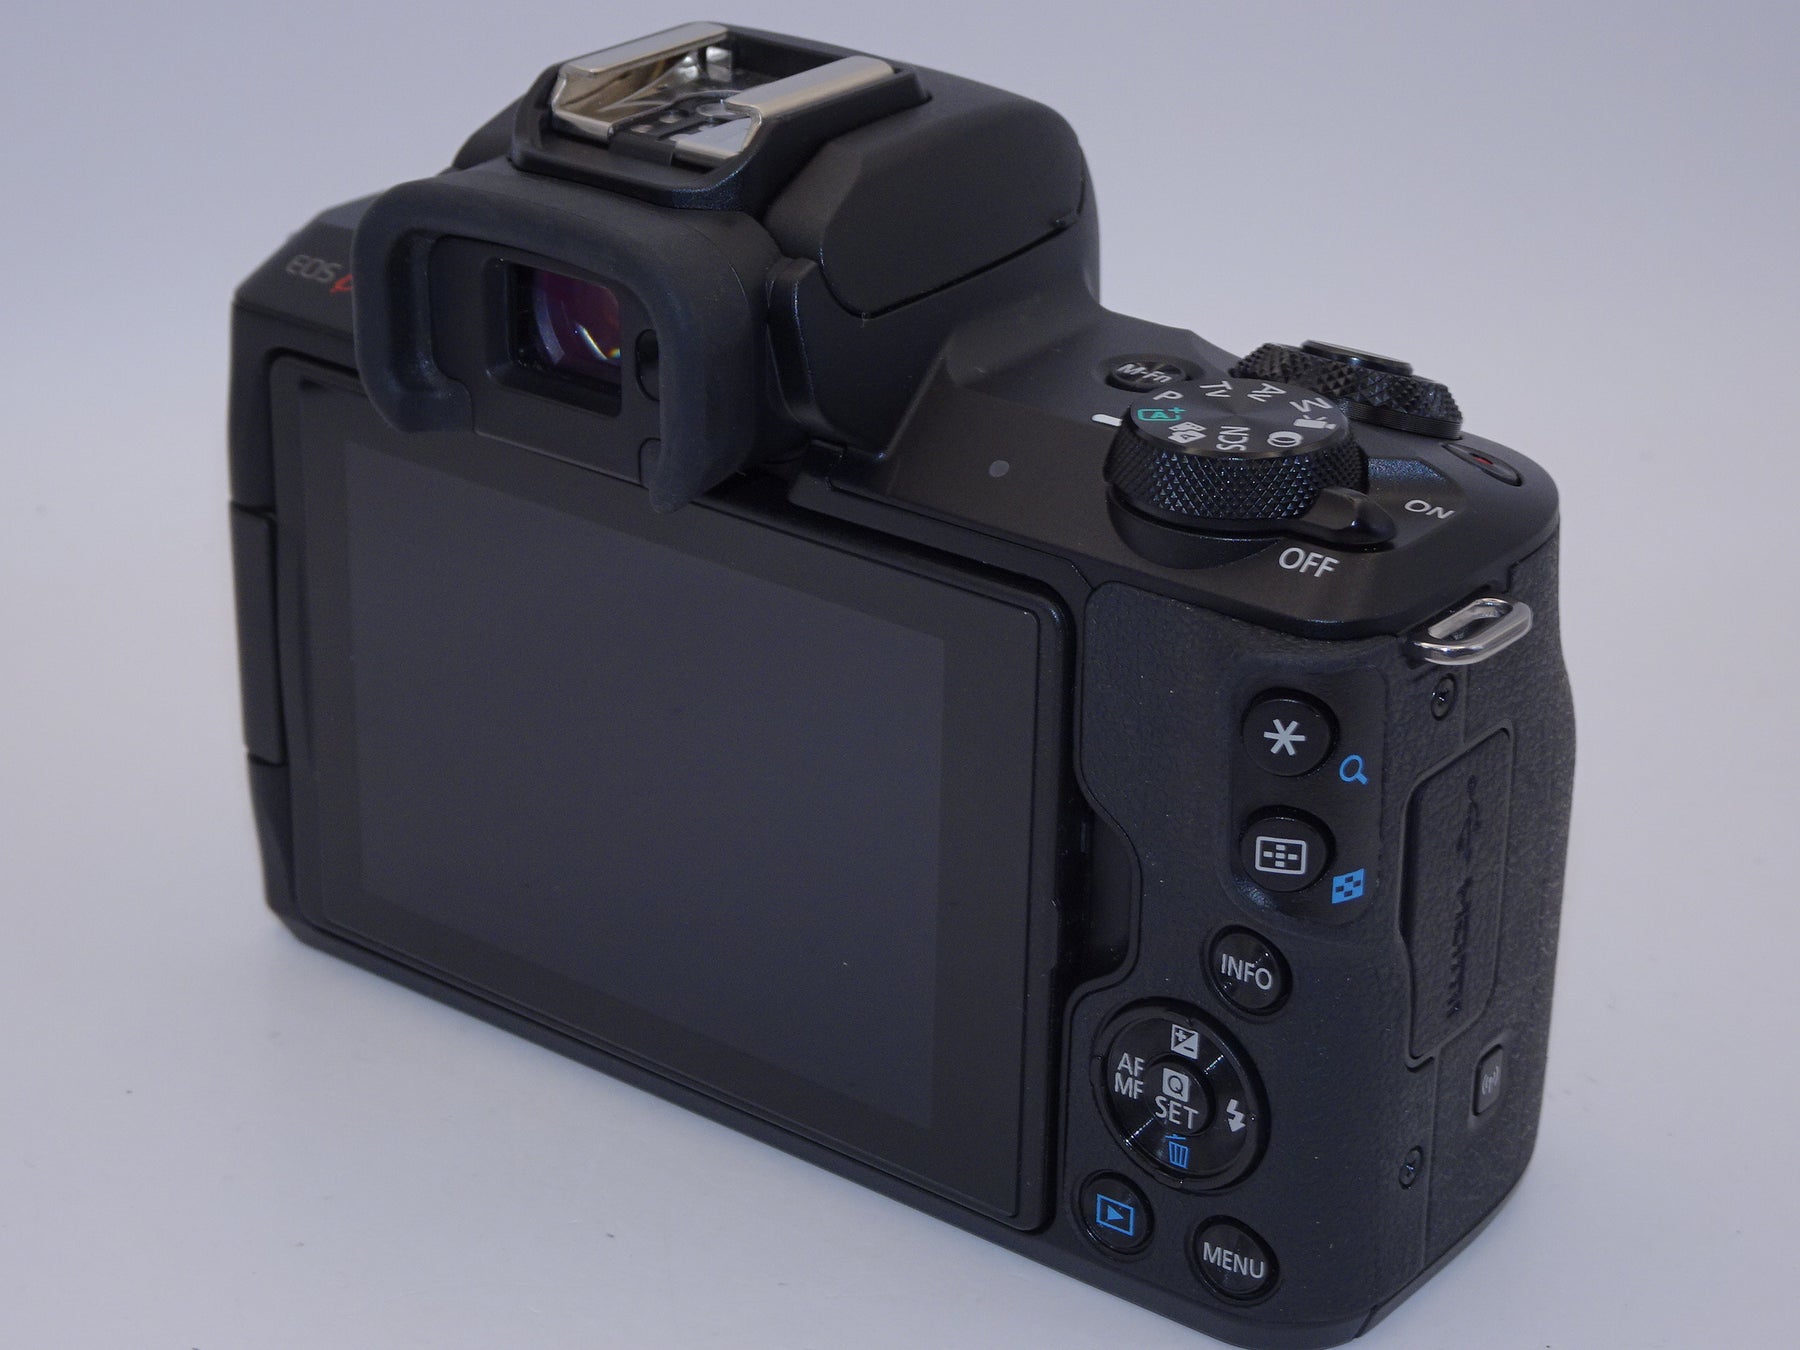 【外観特上級】Canon ミラーレス一眼カメラ EOS Kiss M2 ダブルズームキット ブラック KISSM2BK-WZK